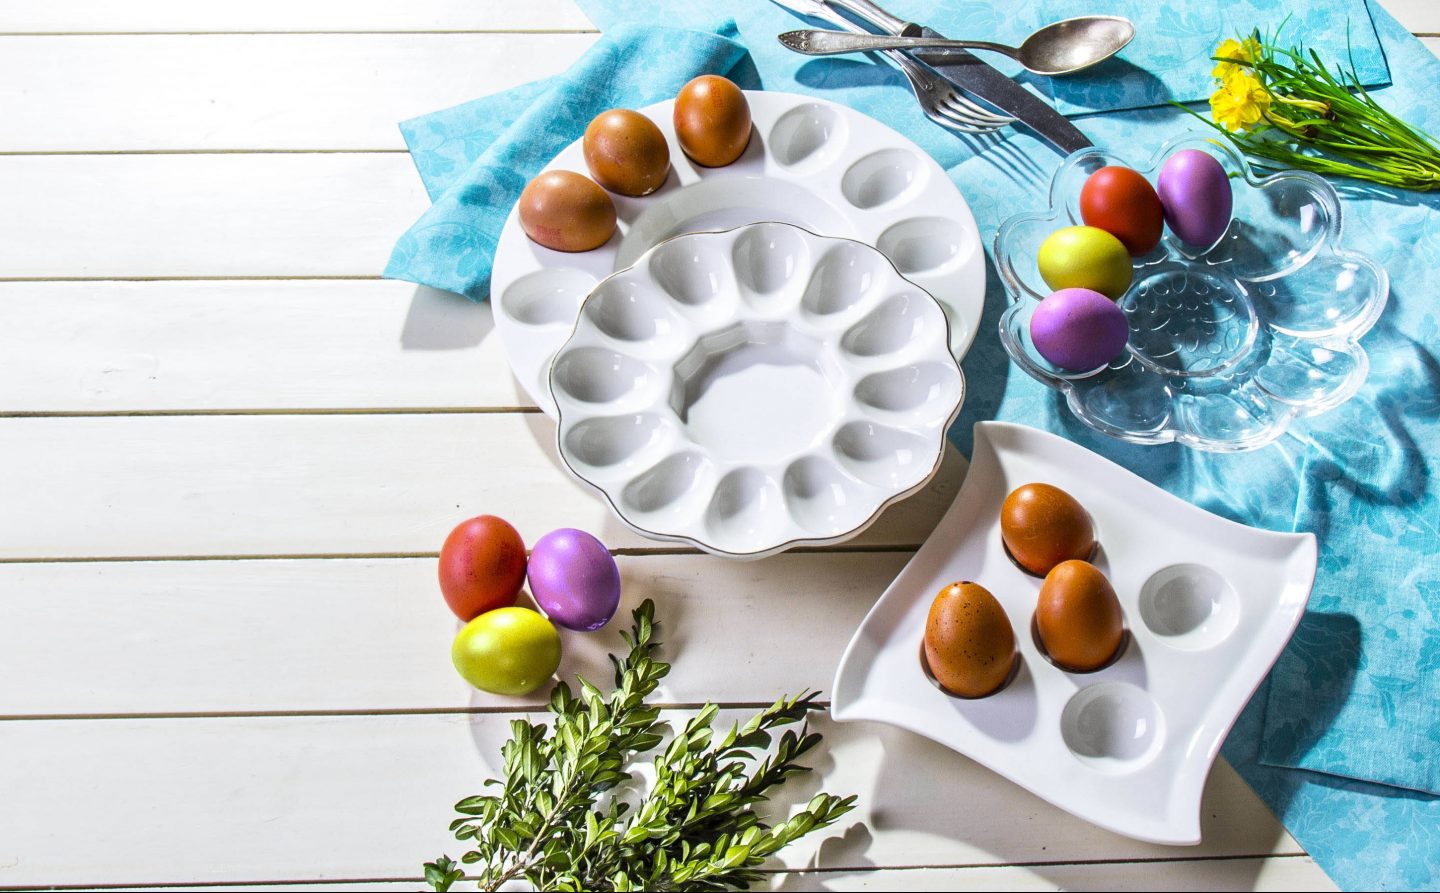 Niezbędne akcesoria na Wielkanoc - formy wielkanocne do ciast, talerze do jajek i wiele innych